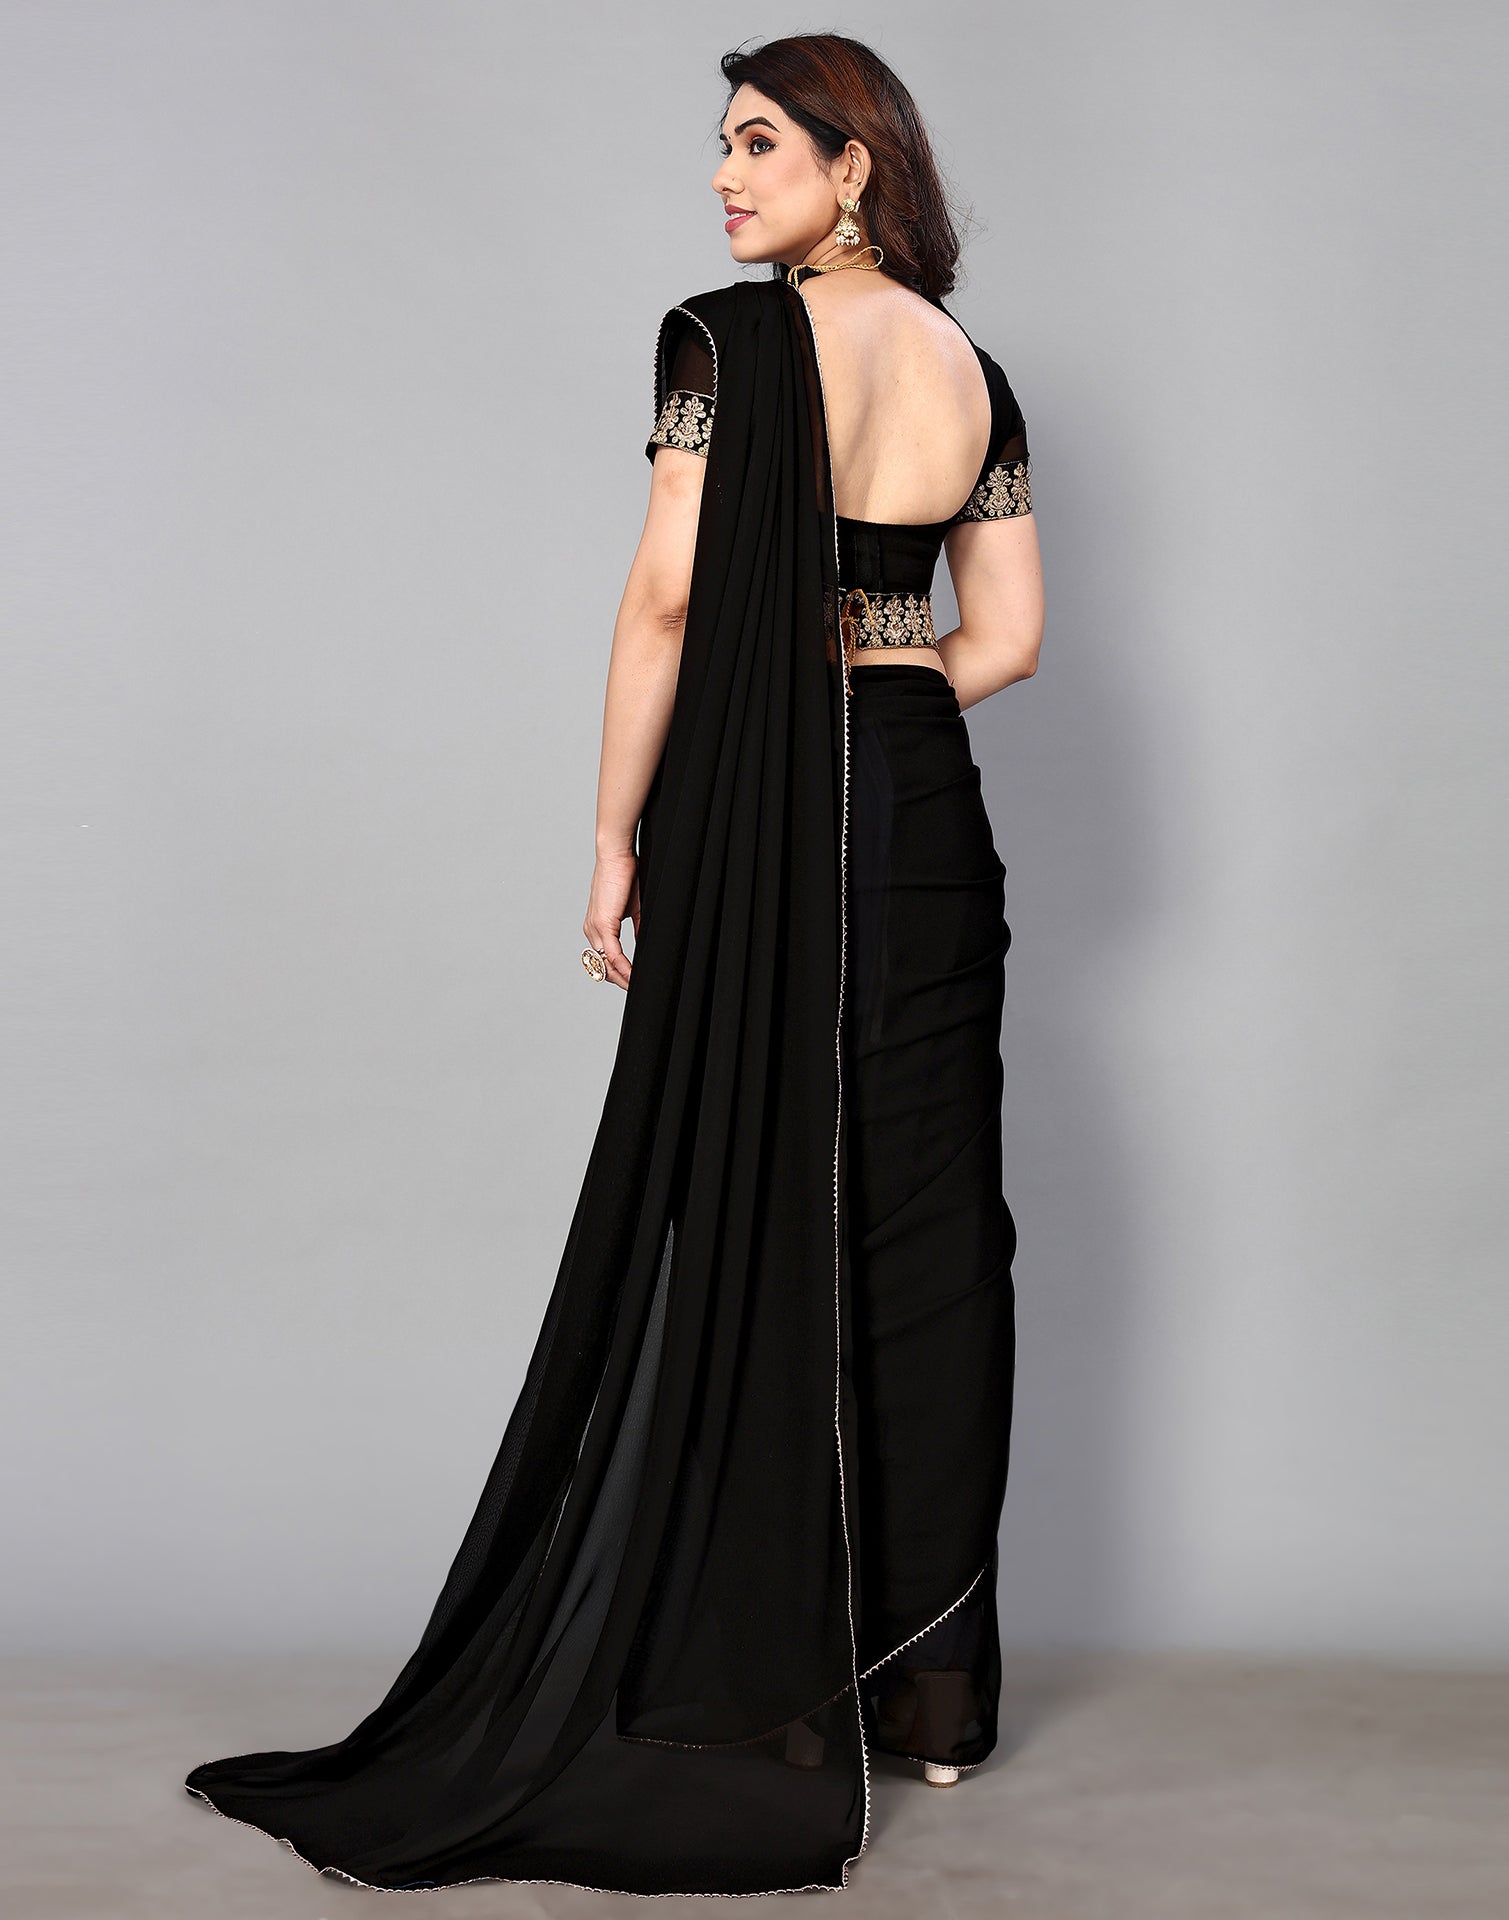 Formal Dresses | Long Gowns to Short Formal Dresses | Windsor